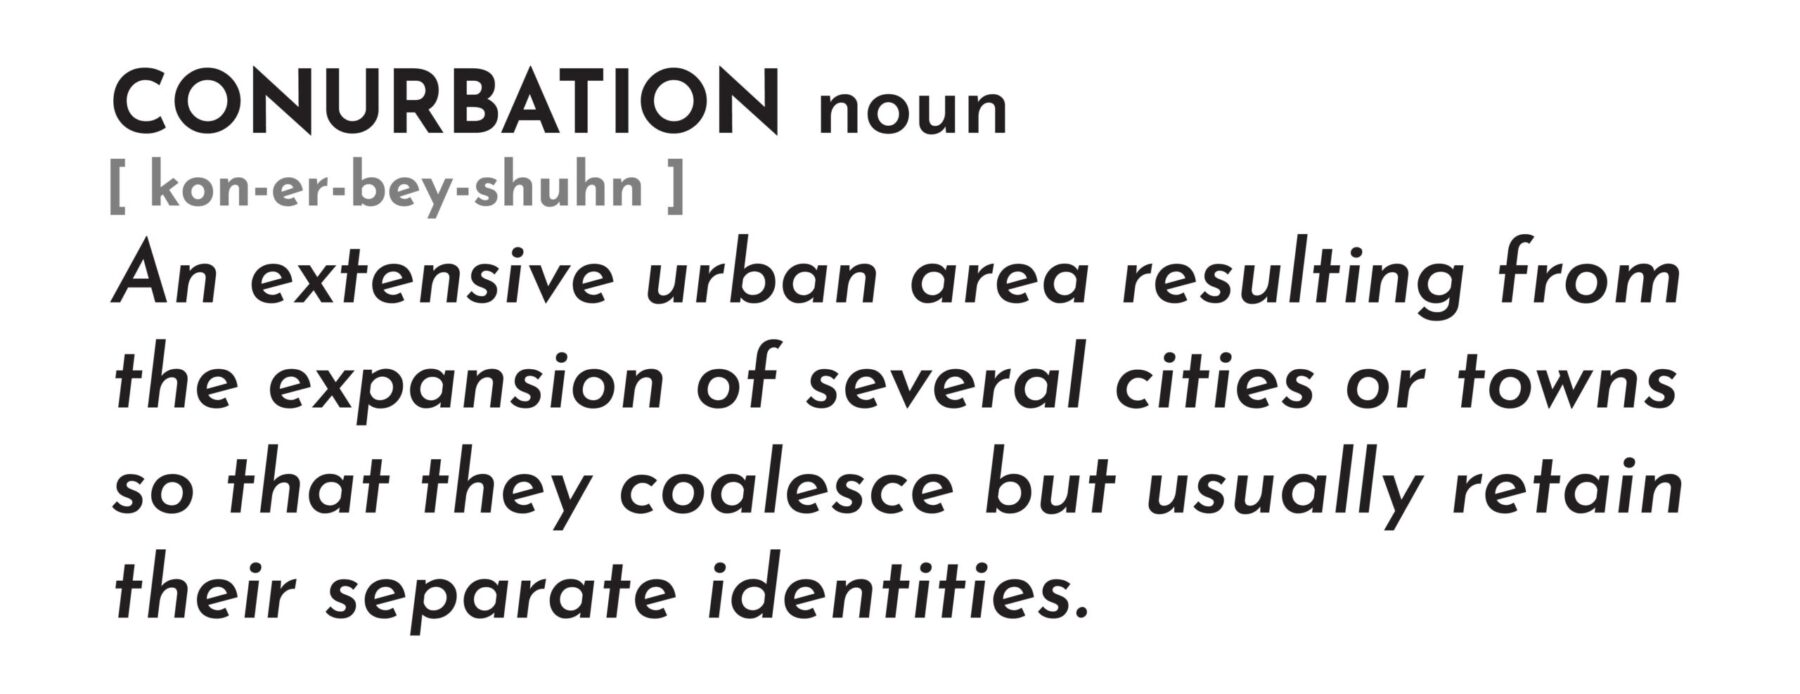 Defination of conurbation.